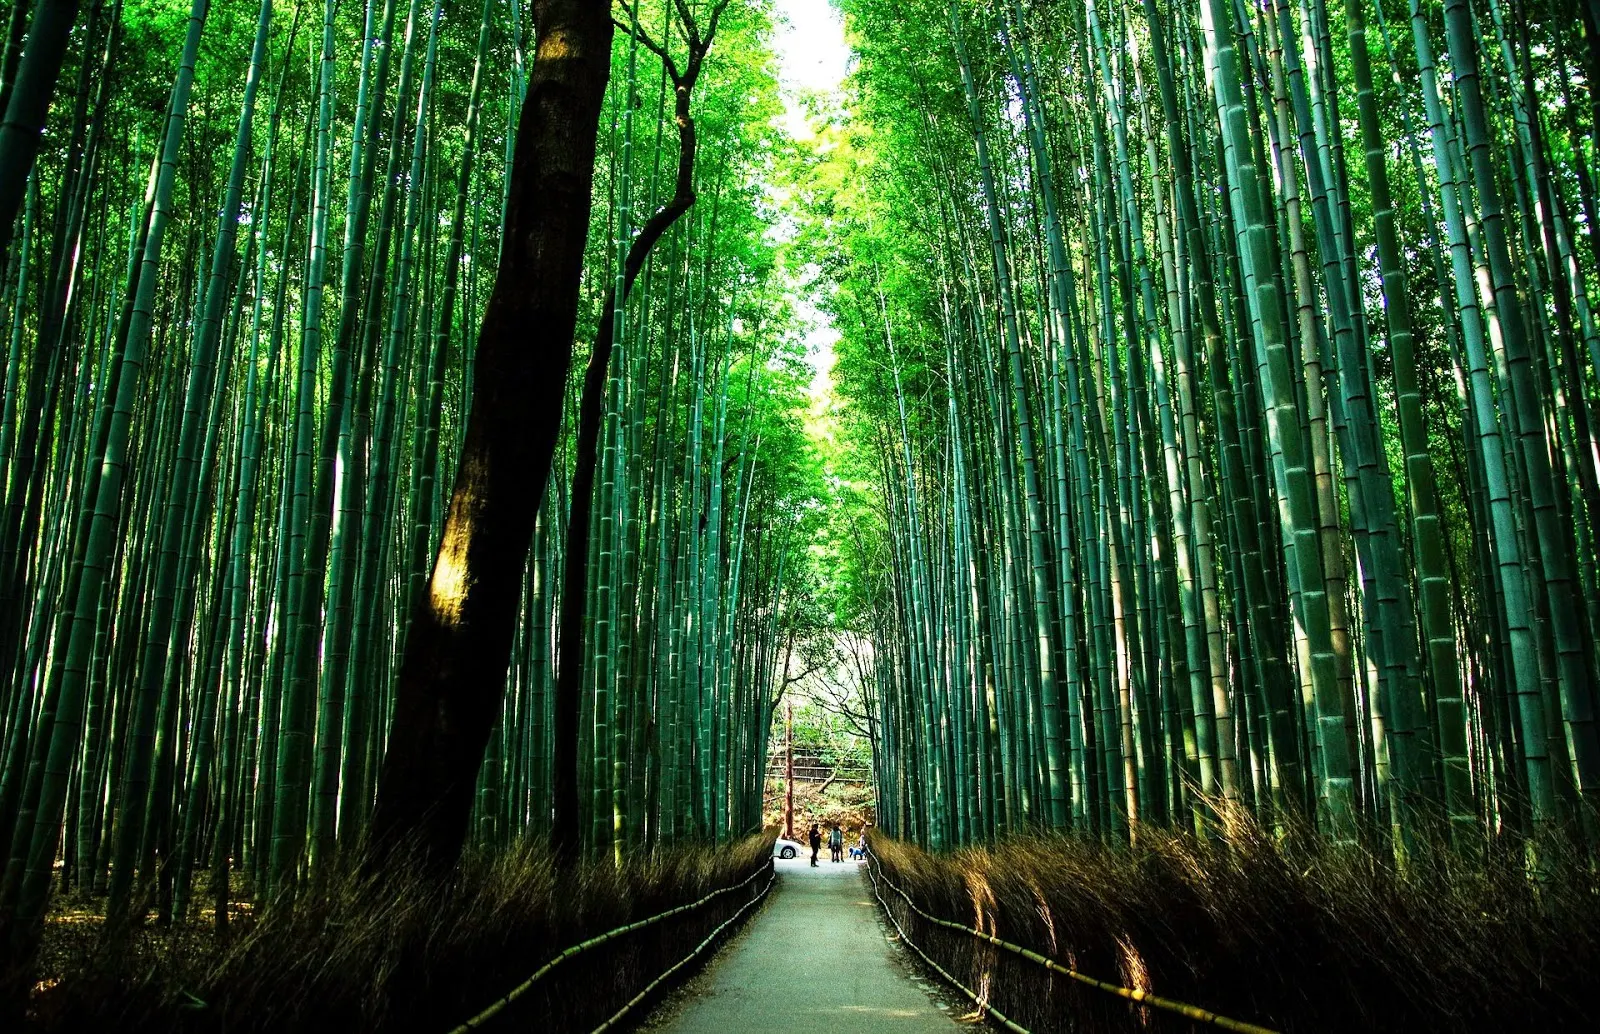 京都-京都景點-推薦-嵐山-Arashiyama-京都自由行-京都觀光景點-一日遊-京都旅遊-市區-京都必去景點-京都好玩景點-行程-京都必遊景點-京都景點地圖-日本-Kyoto-Tourist-Attraction